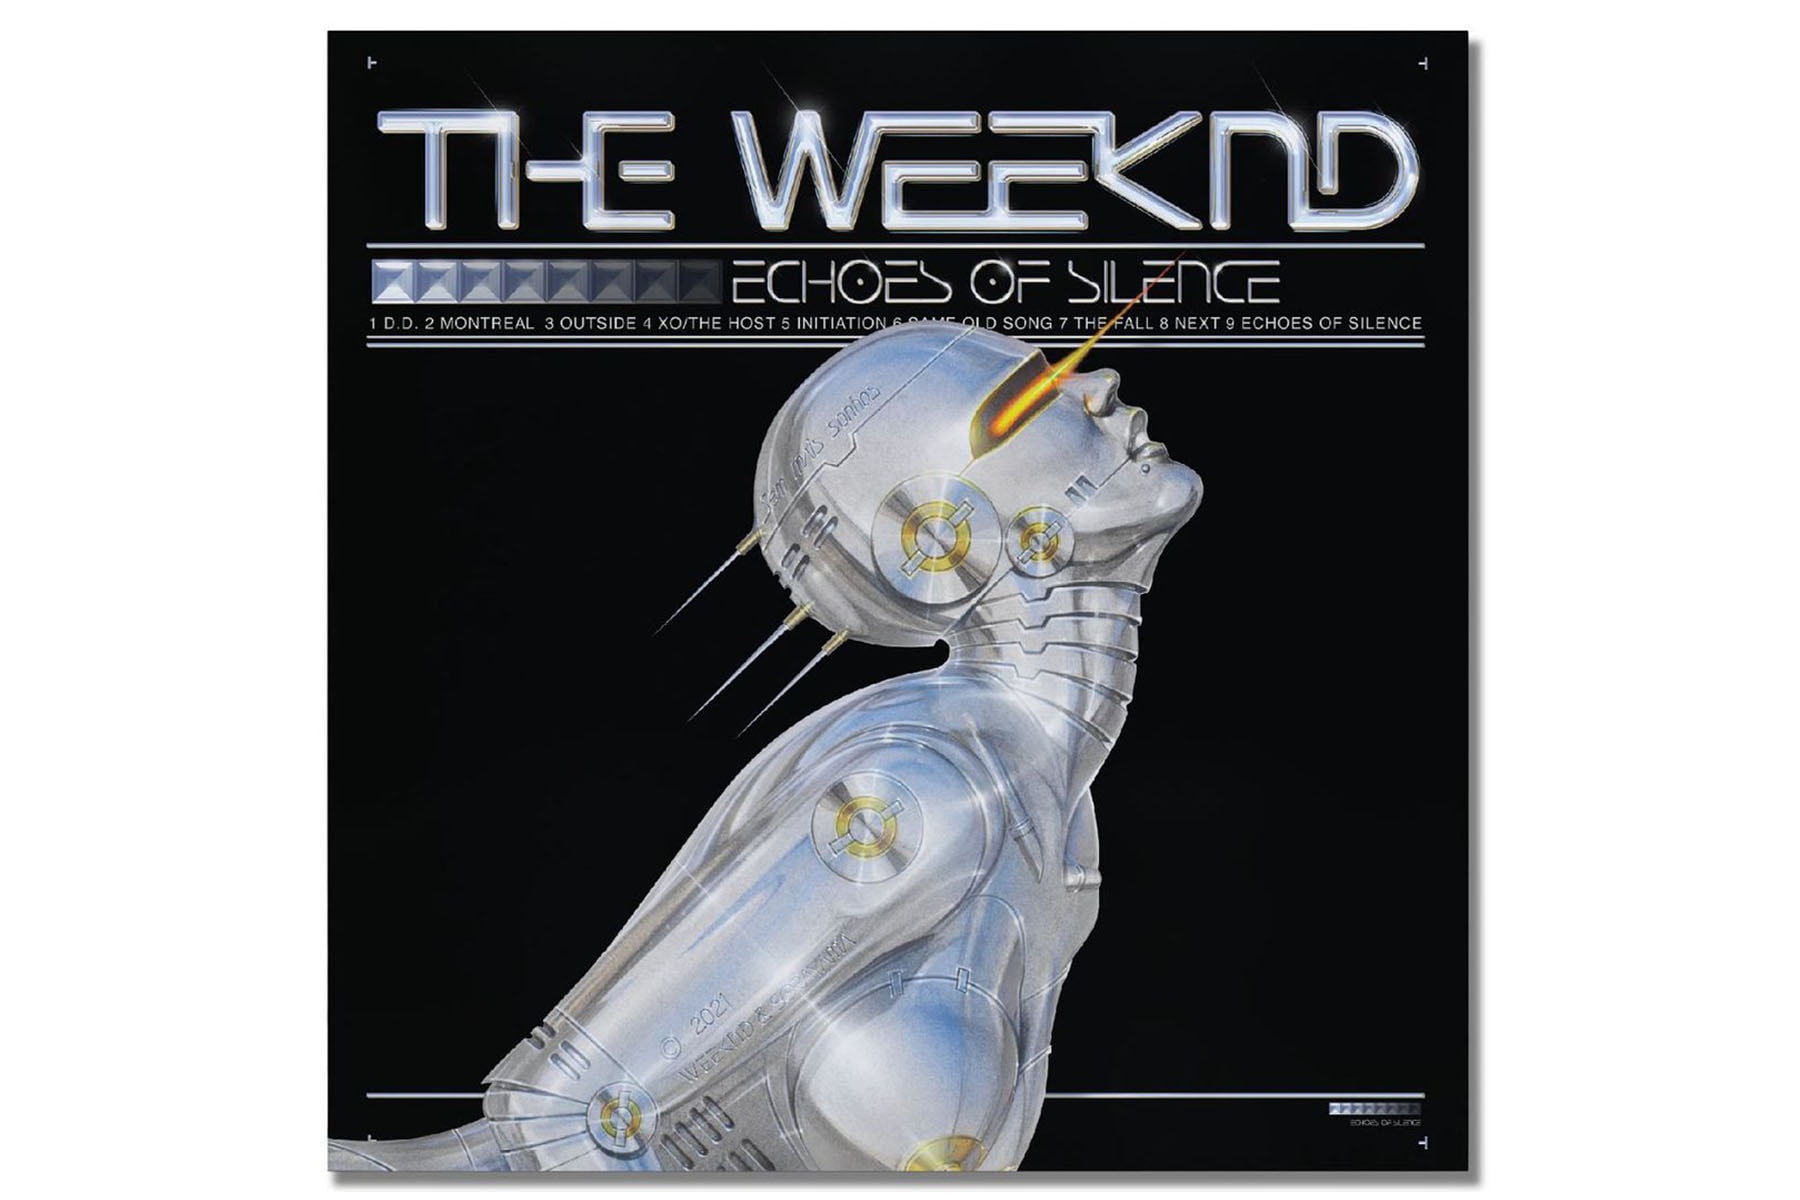 空山基為 The Weeknd 打造《Echoes of Silence》十週年專輯封面